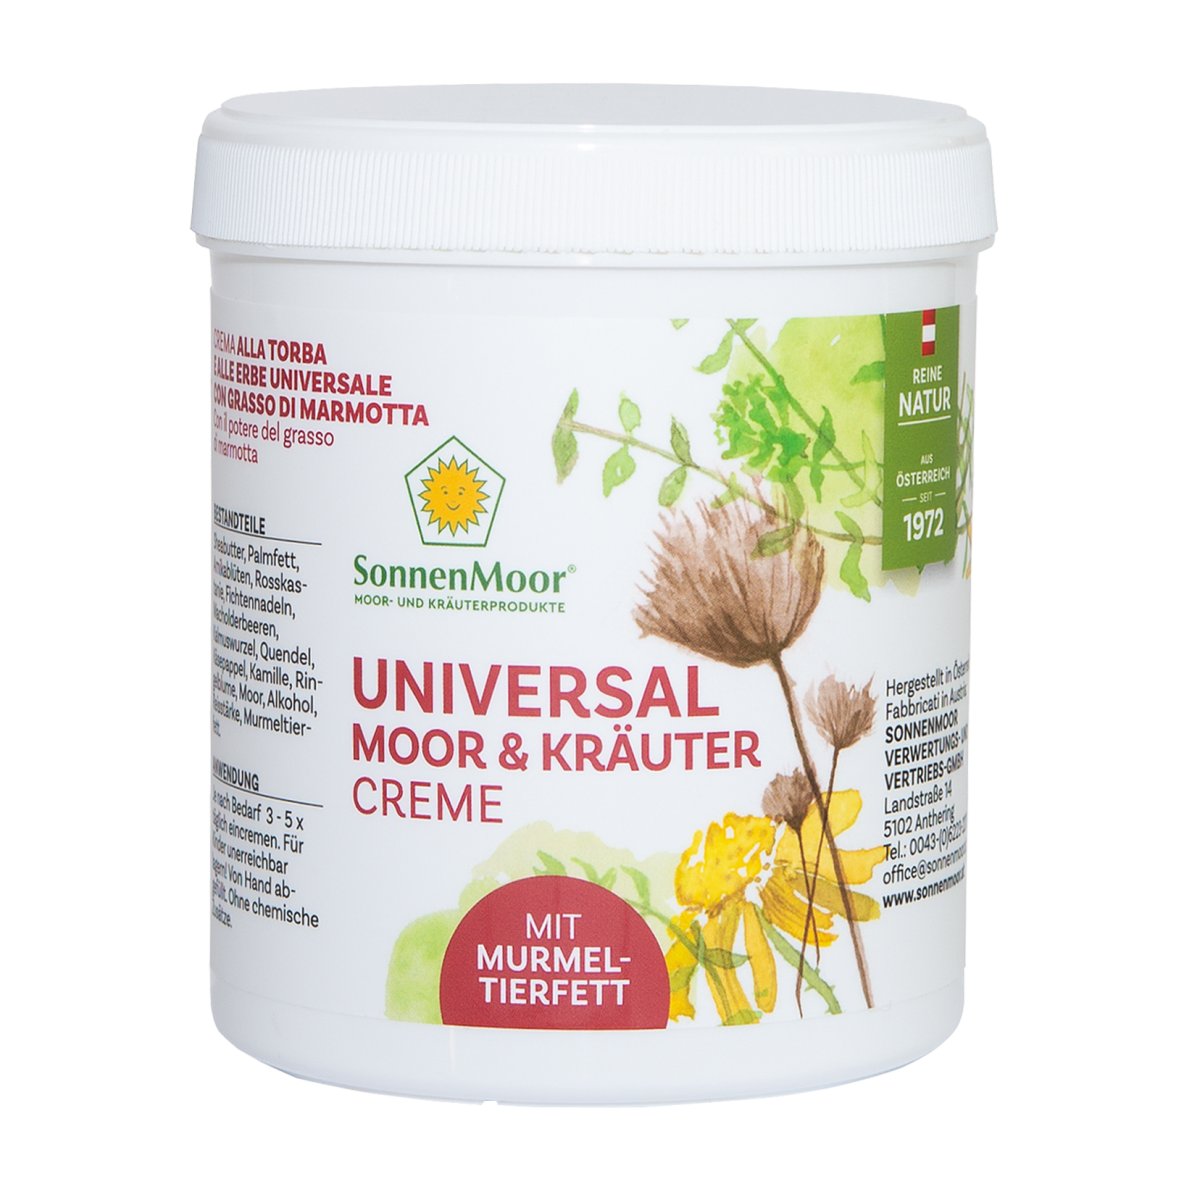 SONNENMOOR Universal Moor- und Kräutercreme mit Murmeltierfett - 500 g